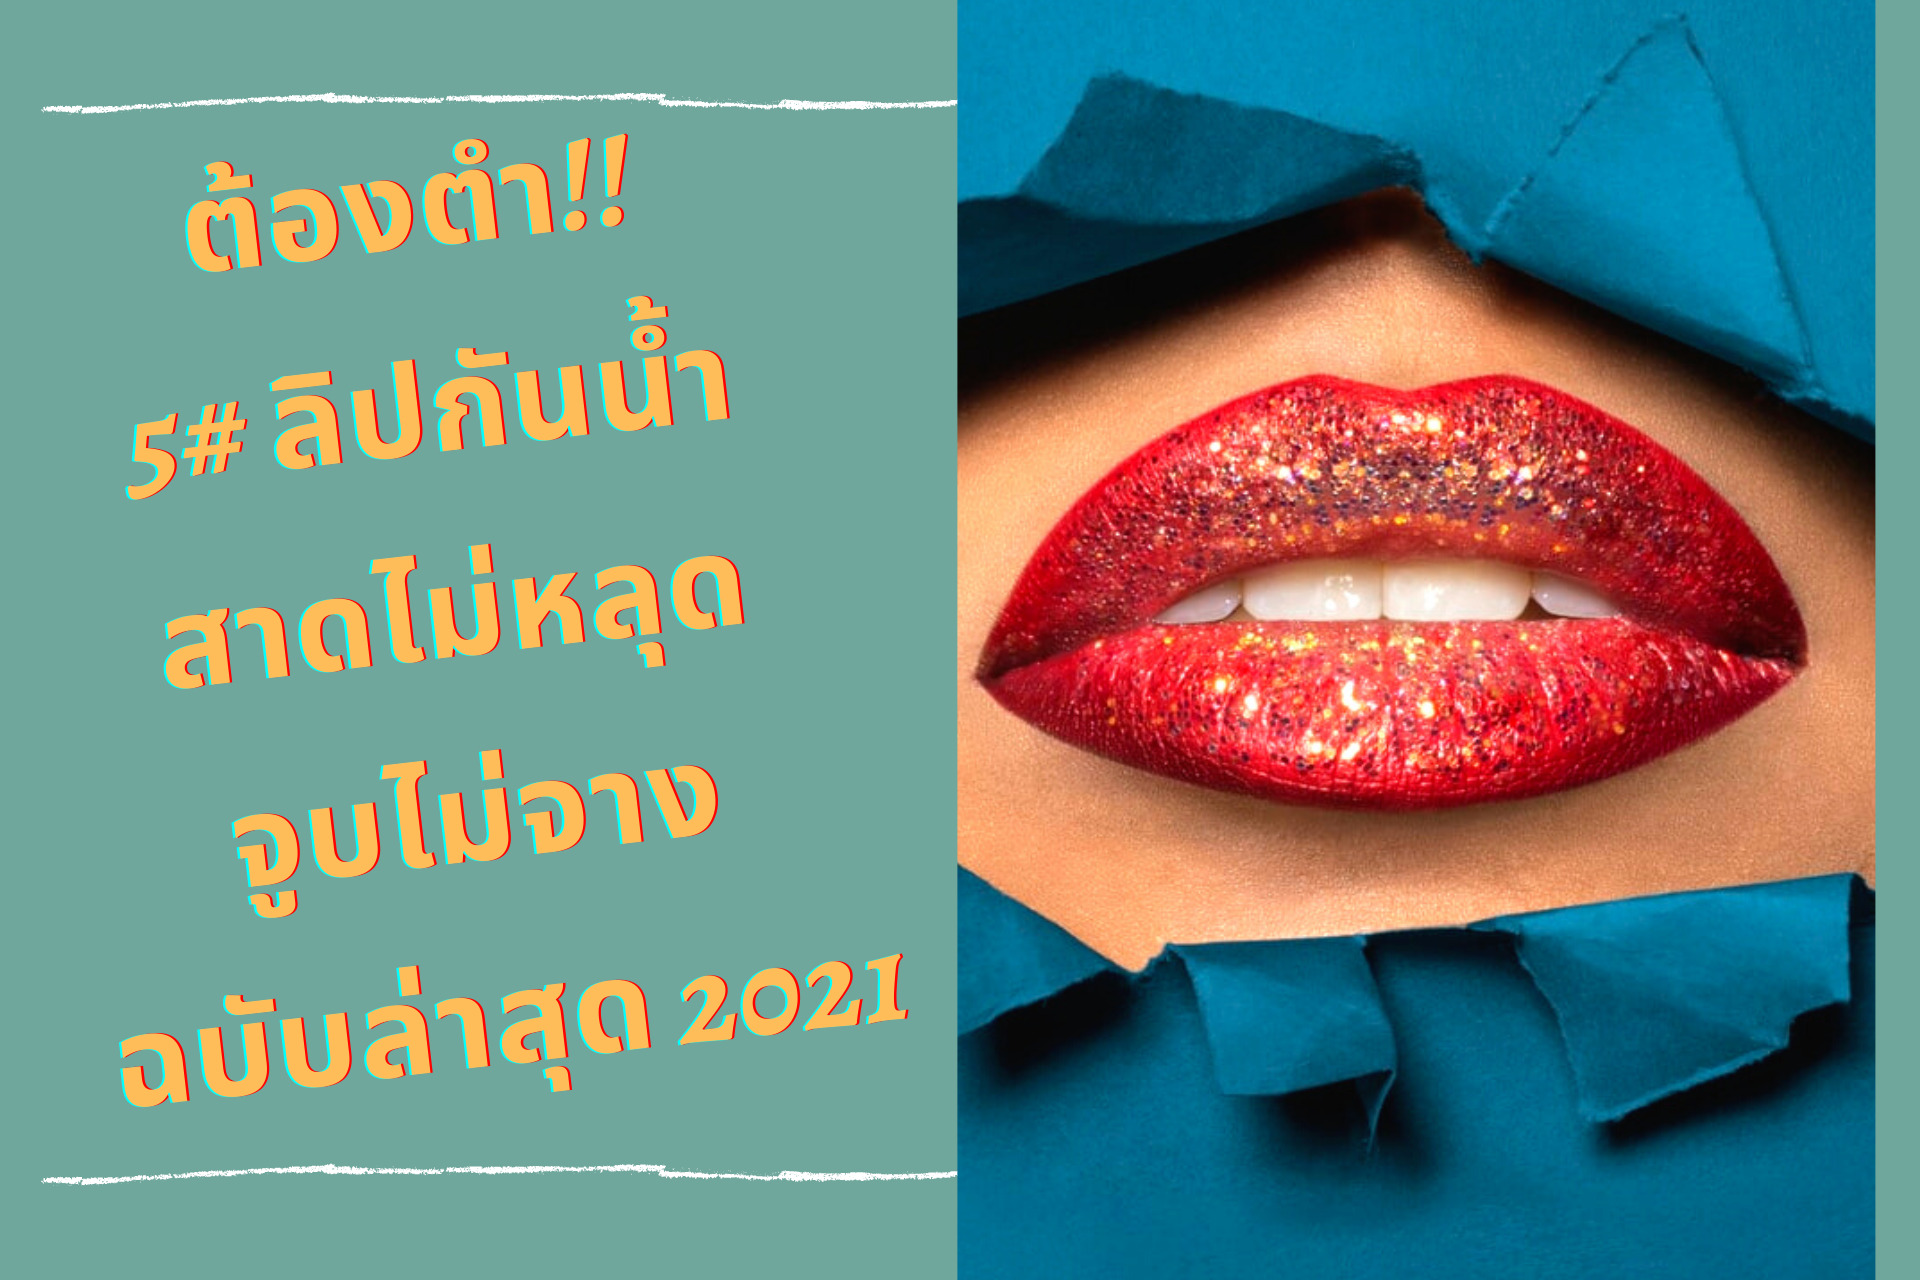 ต้องตำ!! 5# ลิปกันน้ำ สาดไม่หลุด จูบไม่จาง ฉบับล่าสุด 2021